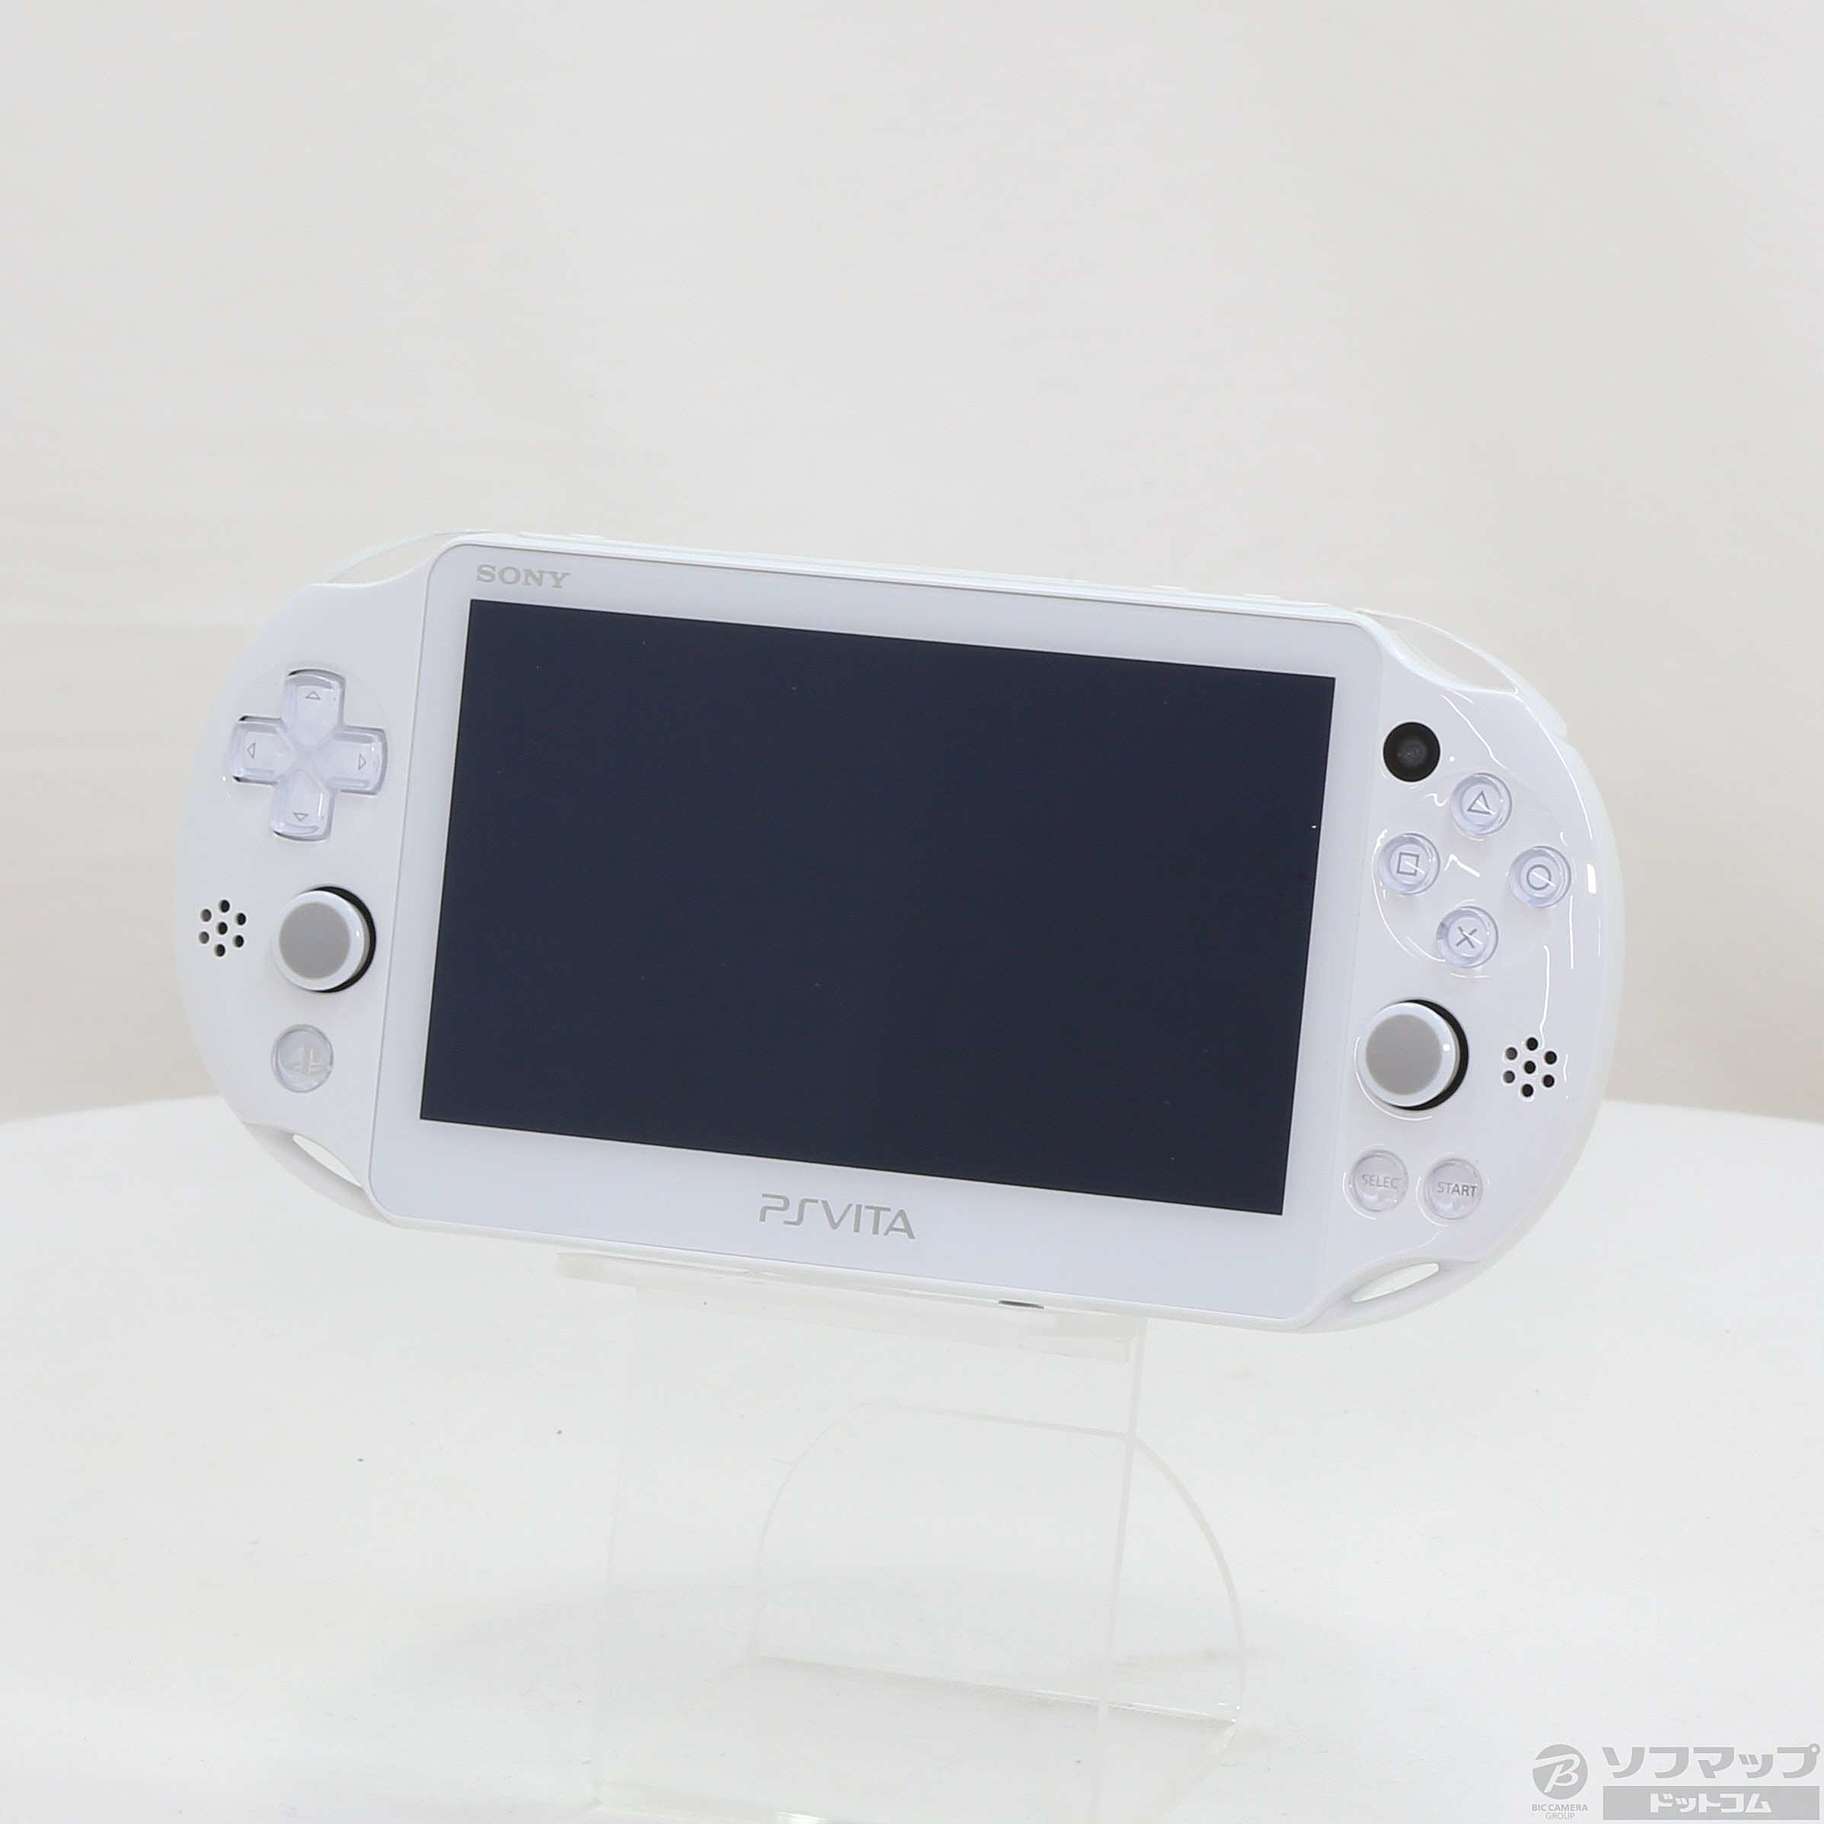 【中古】PlayStation Vita Wi-Fiモデル ホワイト PCH-2000ZA 05/18(水)値下げ